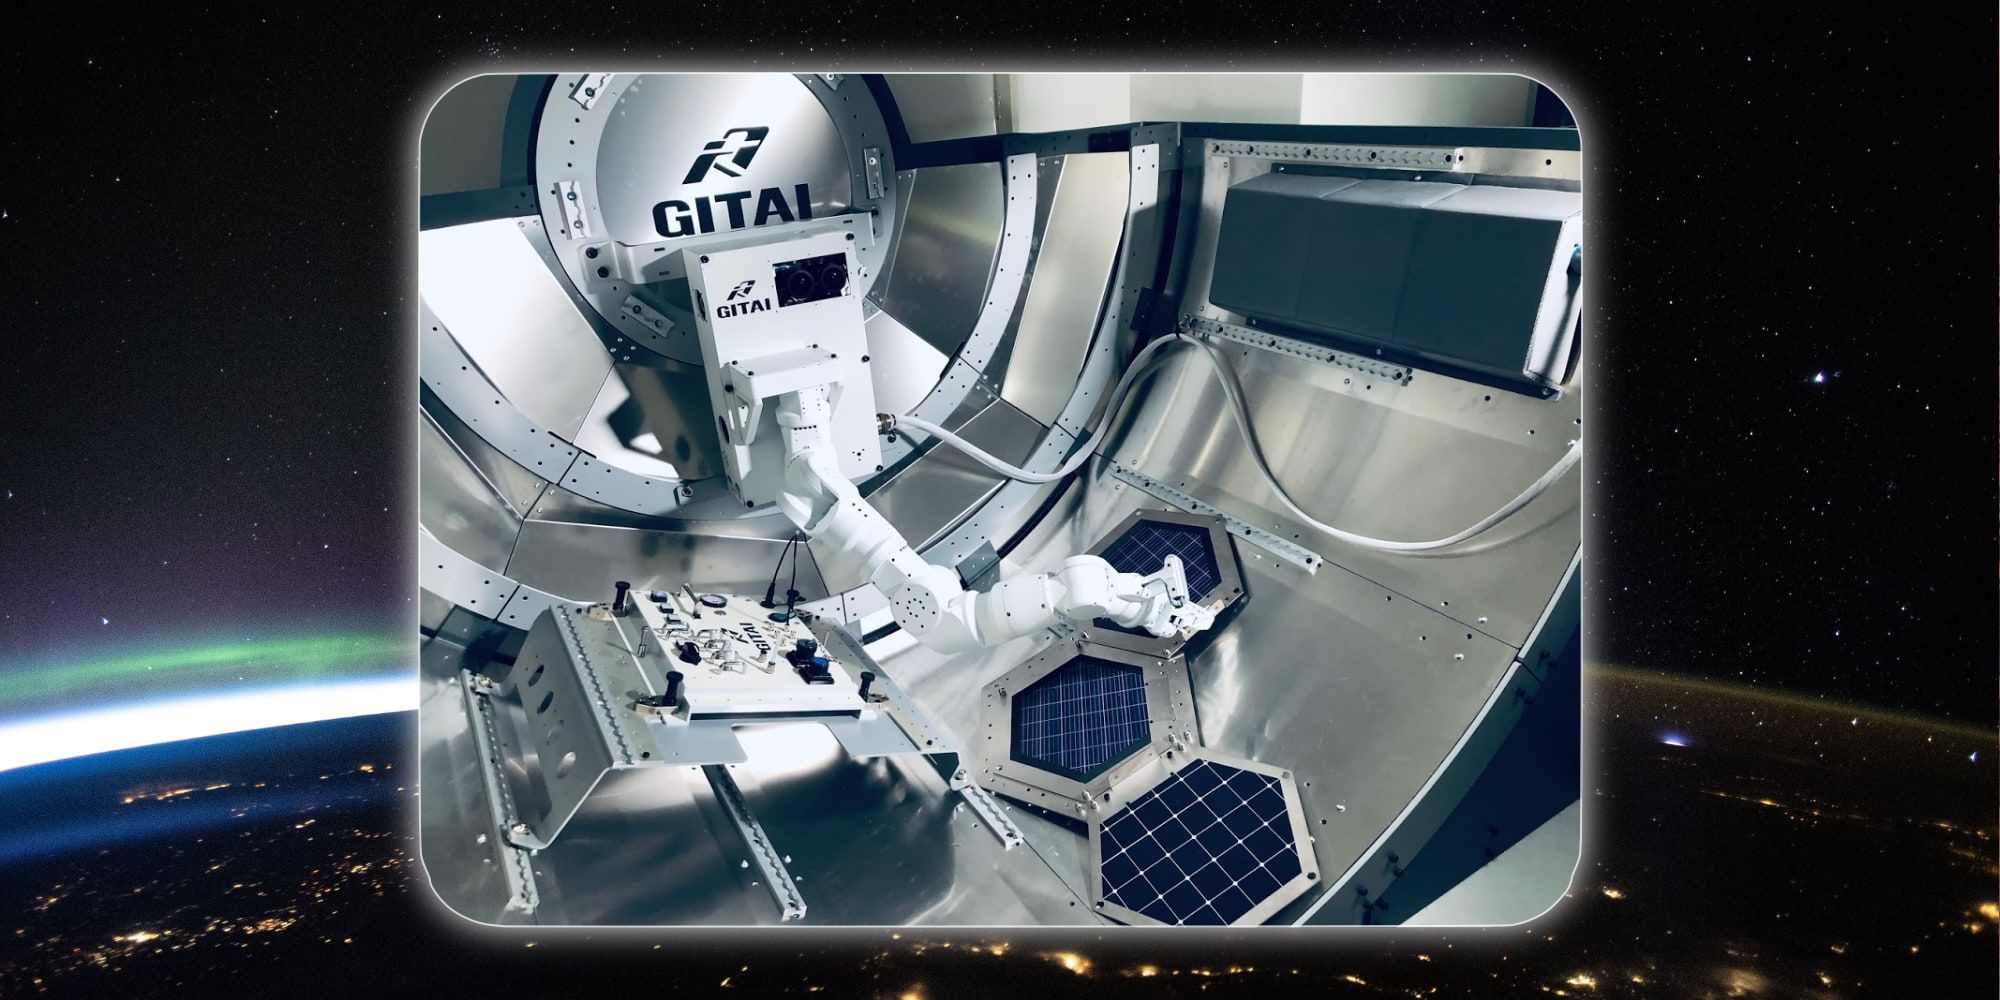 El nuevo brazo robótico de la Estación Espacial Internacional acaba de alcanzar un hito importante